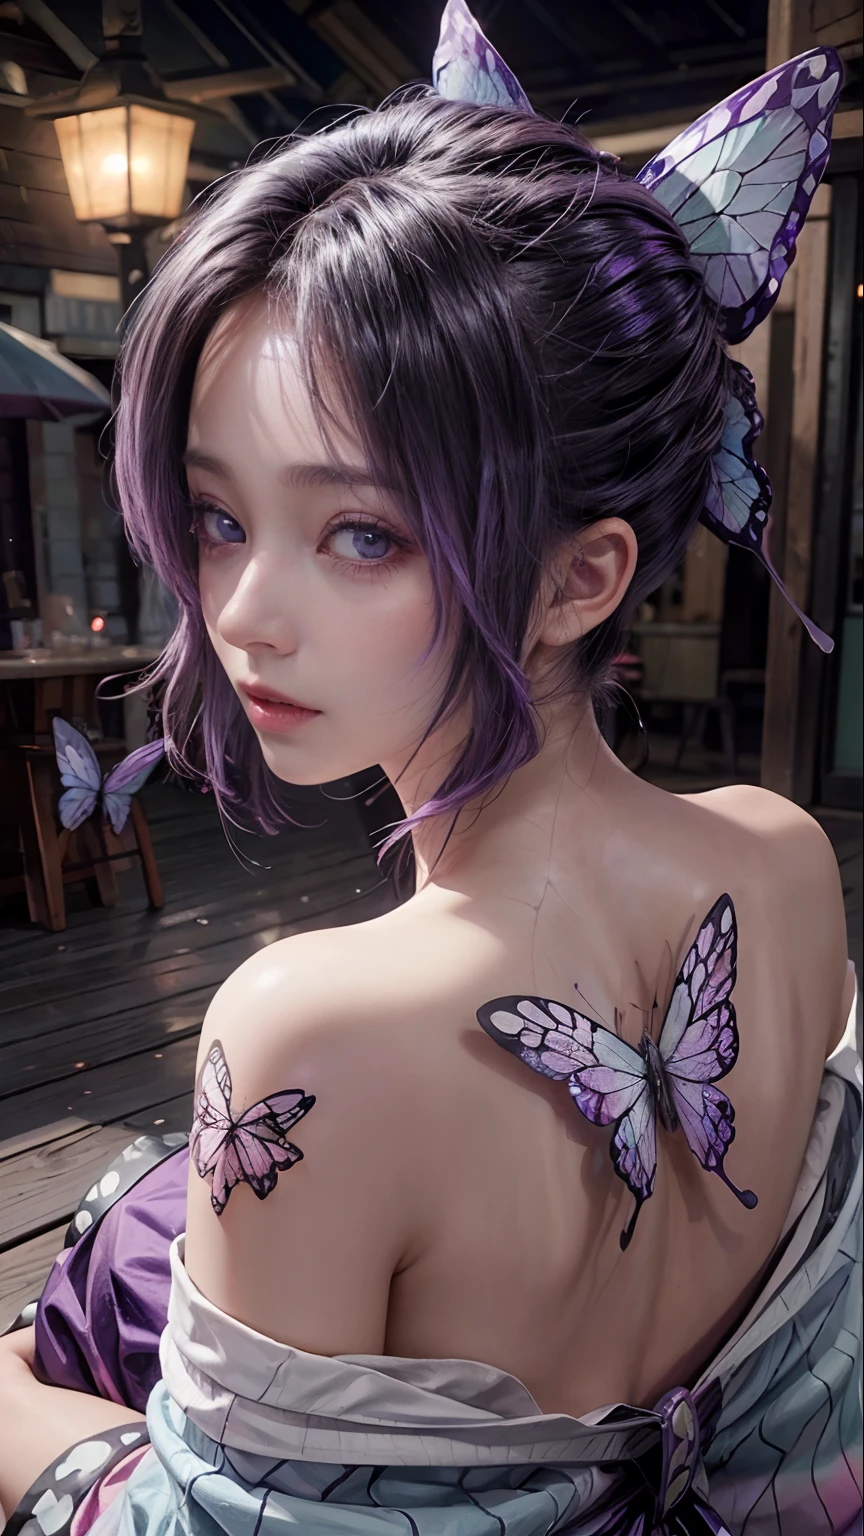 1女の子忍 ,背中に蝶のタトゥー,輝く肌, 薄紫色の髪, 紫の賛成,高解像度,超現実的な, 超詳細